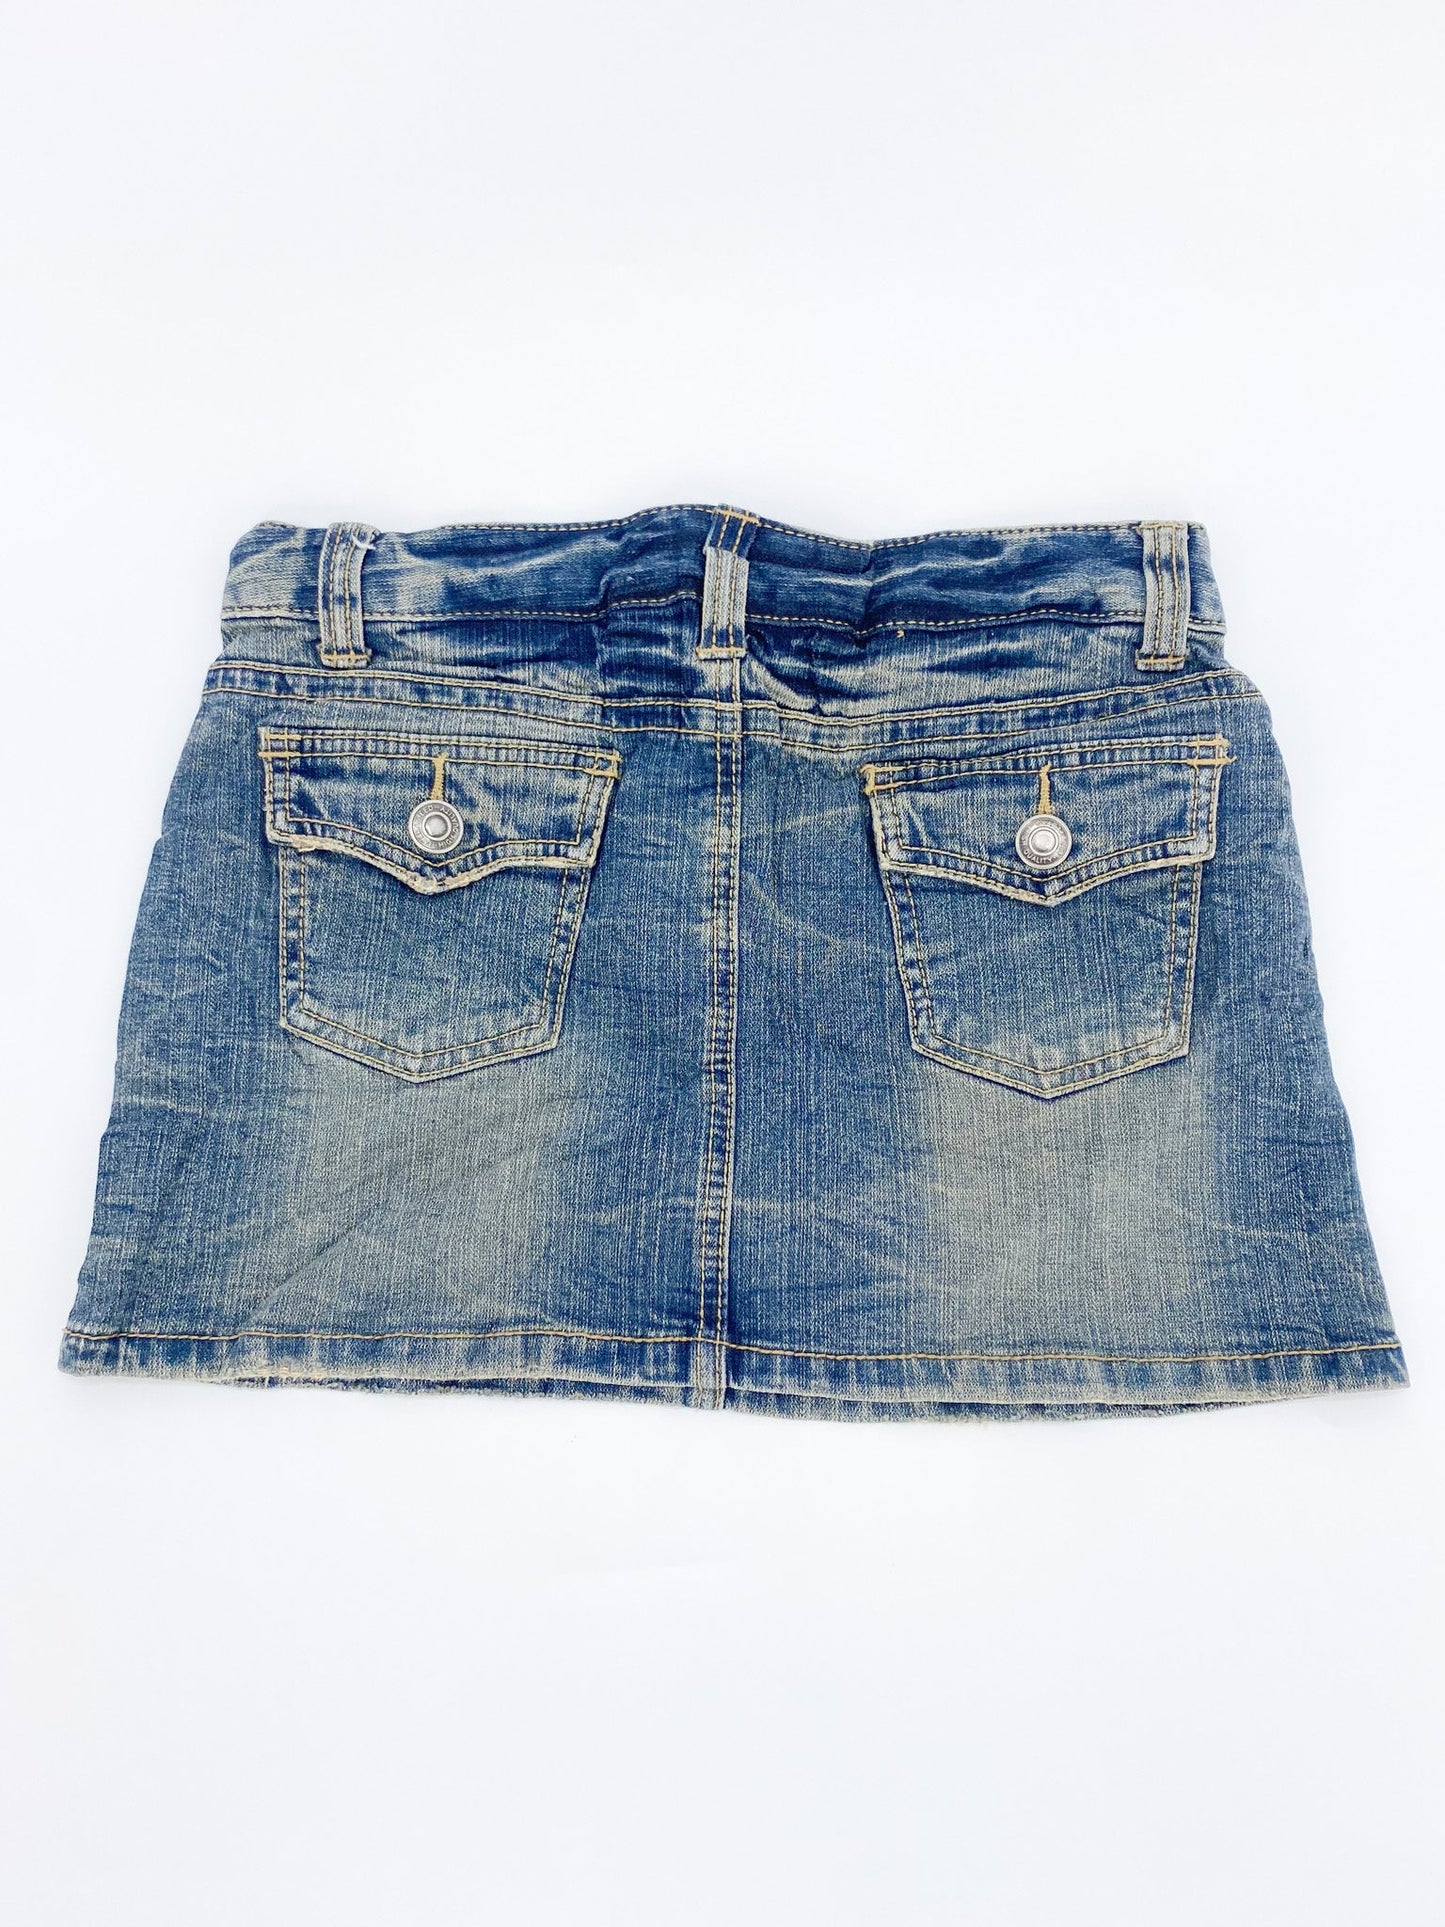 Vintage 00's Dark Wash Denim Mini Skirt - S - Playground Vintage